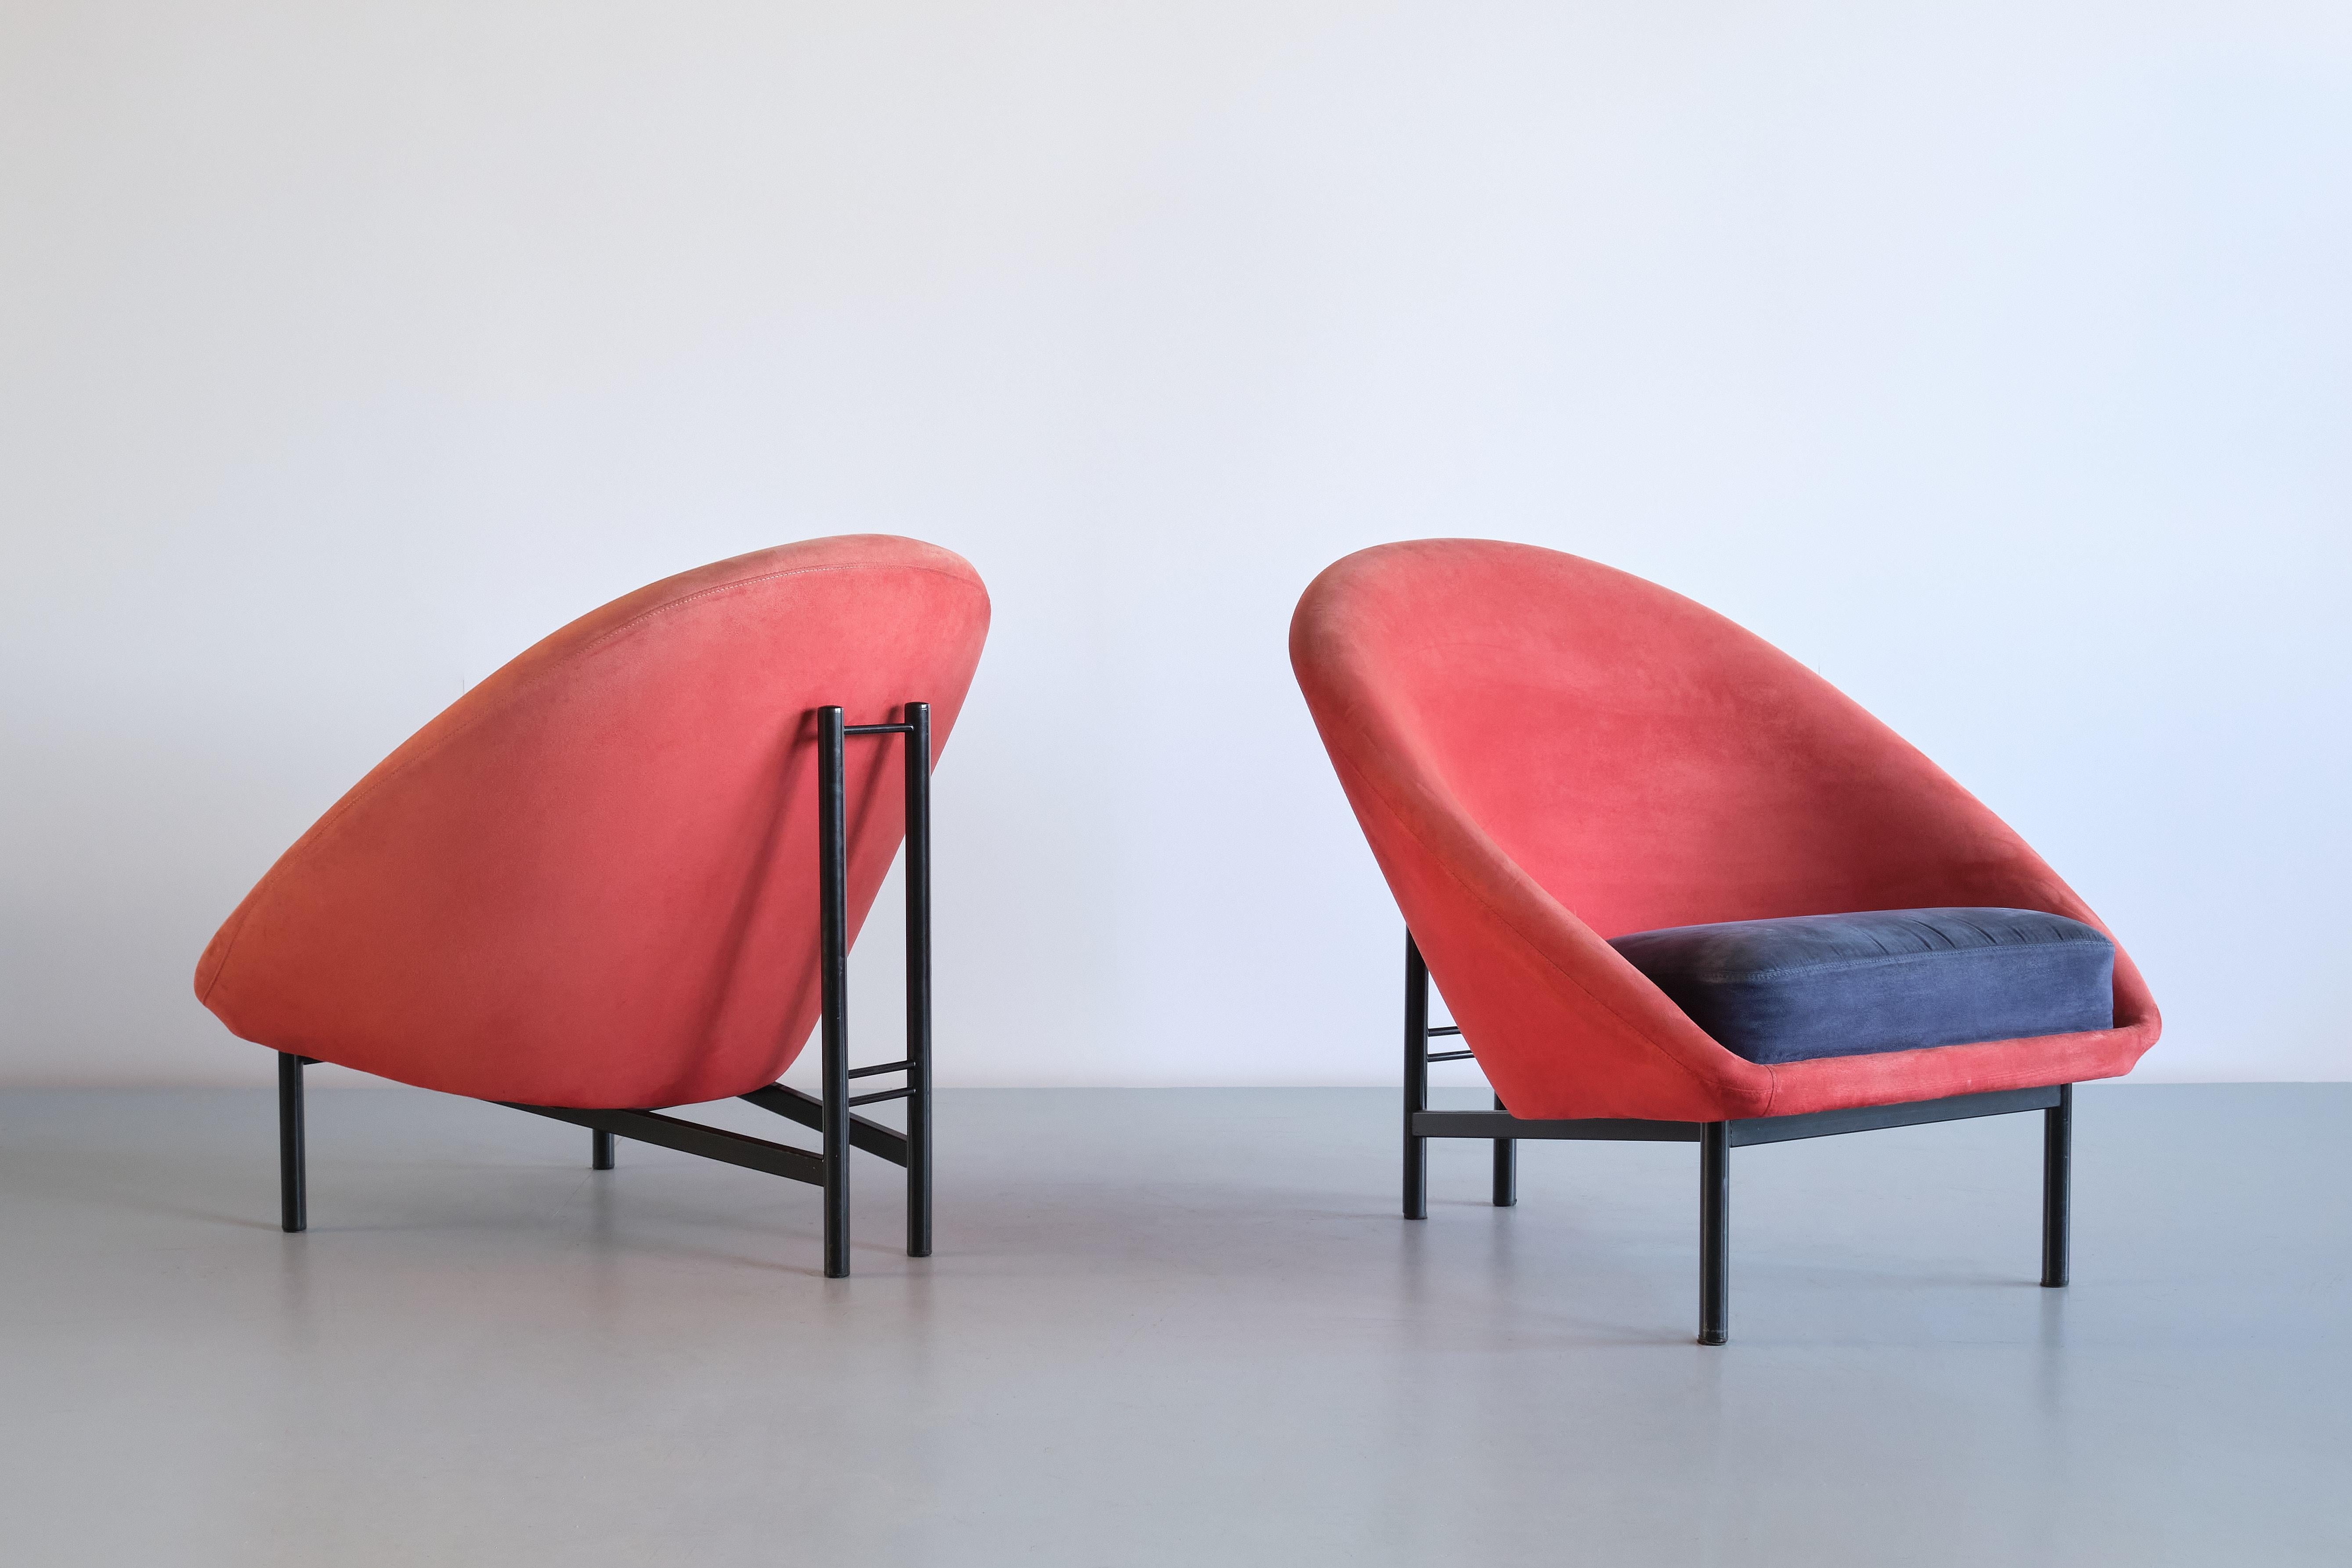 Cette paire de chaises longues a été conçue par Theo Ruth au début des années 1960. Le modèle rare numéroté F815 a été produit par Artifort aux Pays-Bas.
Le design est marqué par les lignes arrondies de l'assise rembourrée et le positionnement